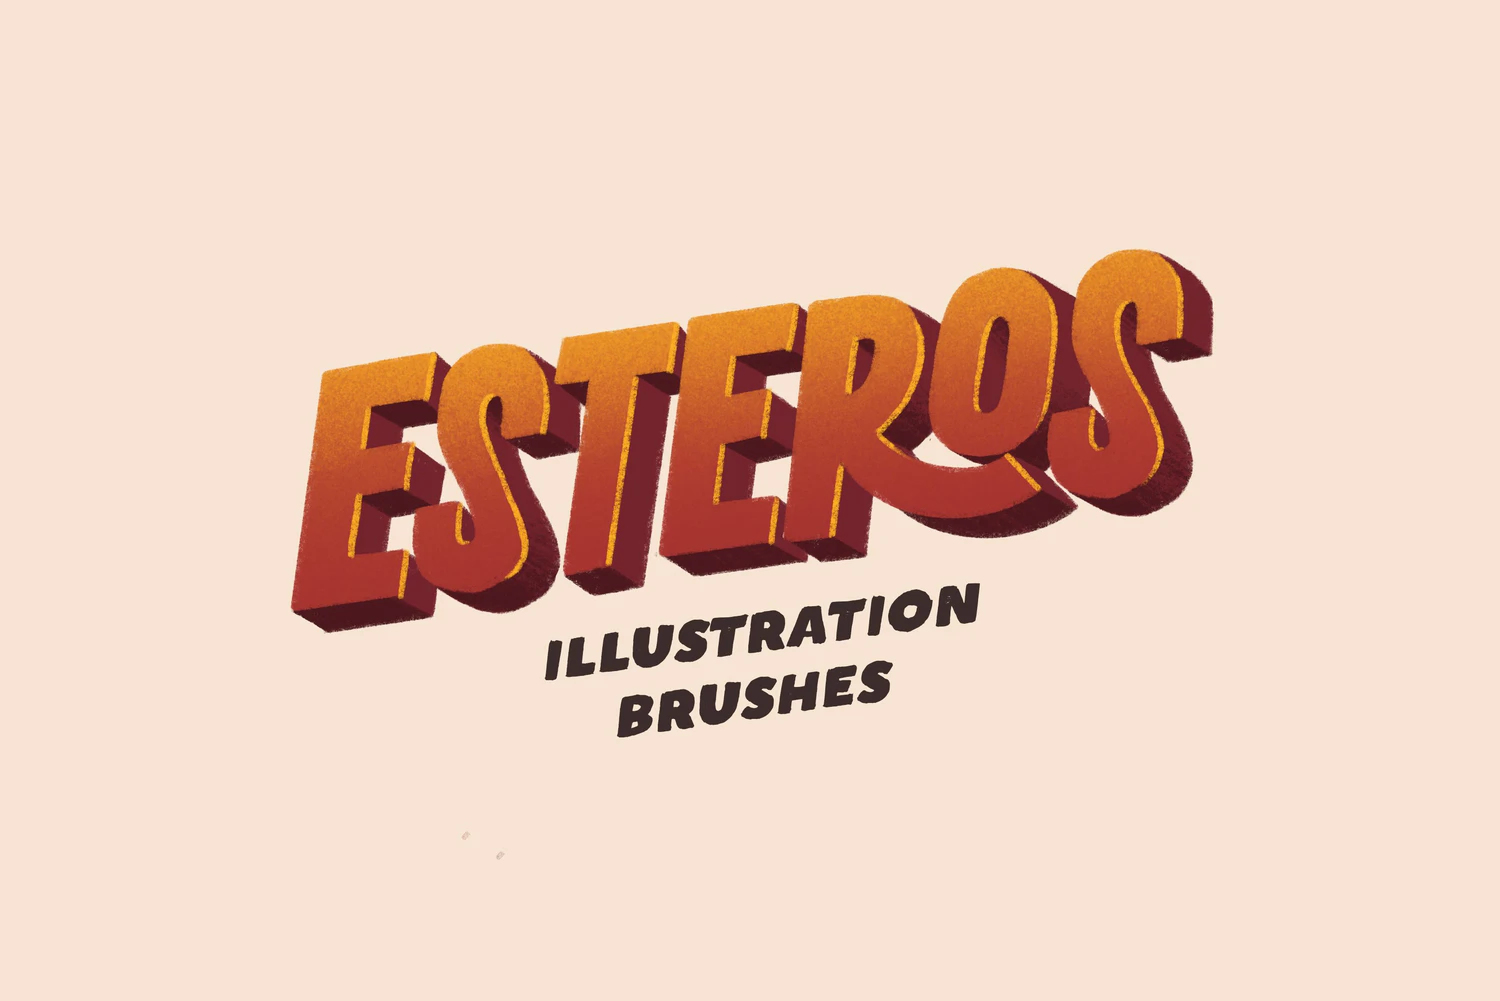 1967 动漫卡通人物噪点插画procreat笔刷画笔包 Esteros procreate brushes